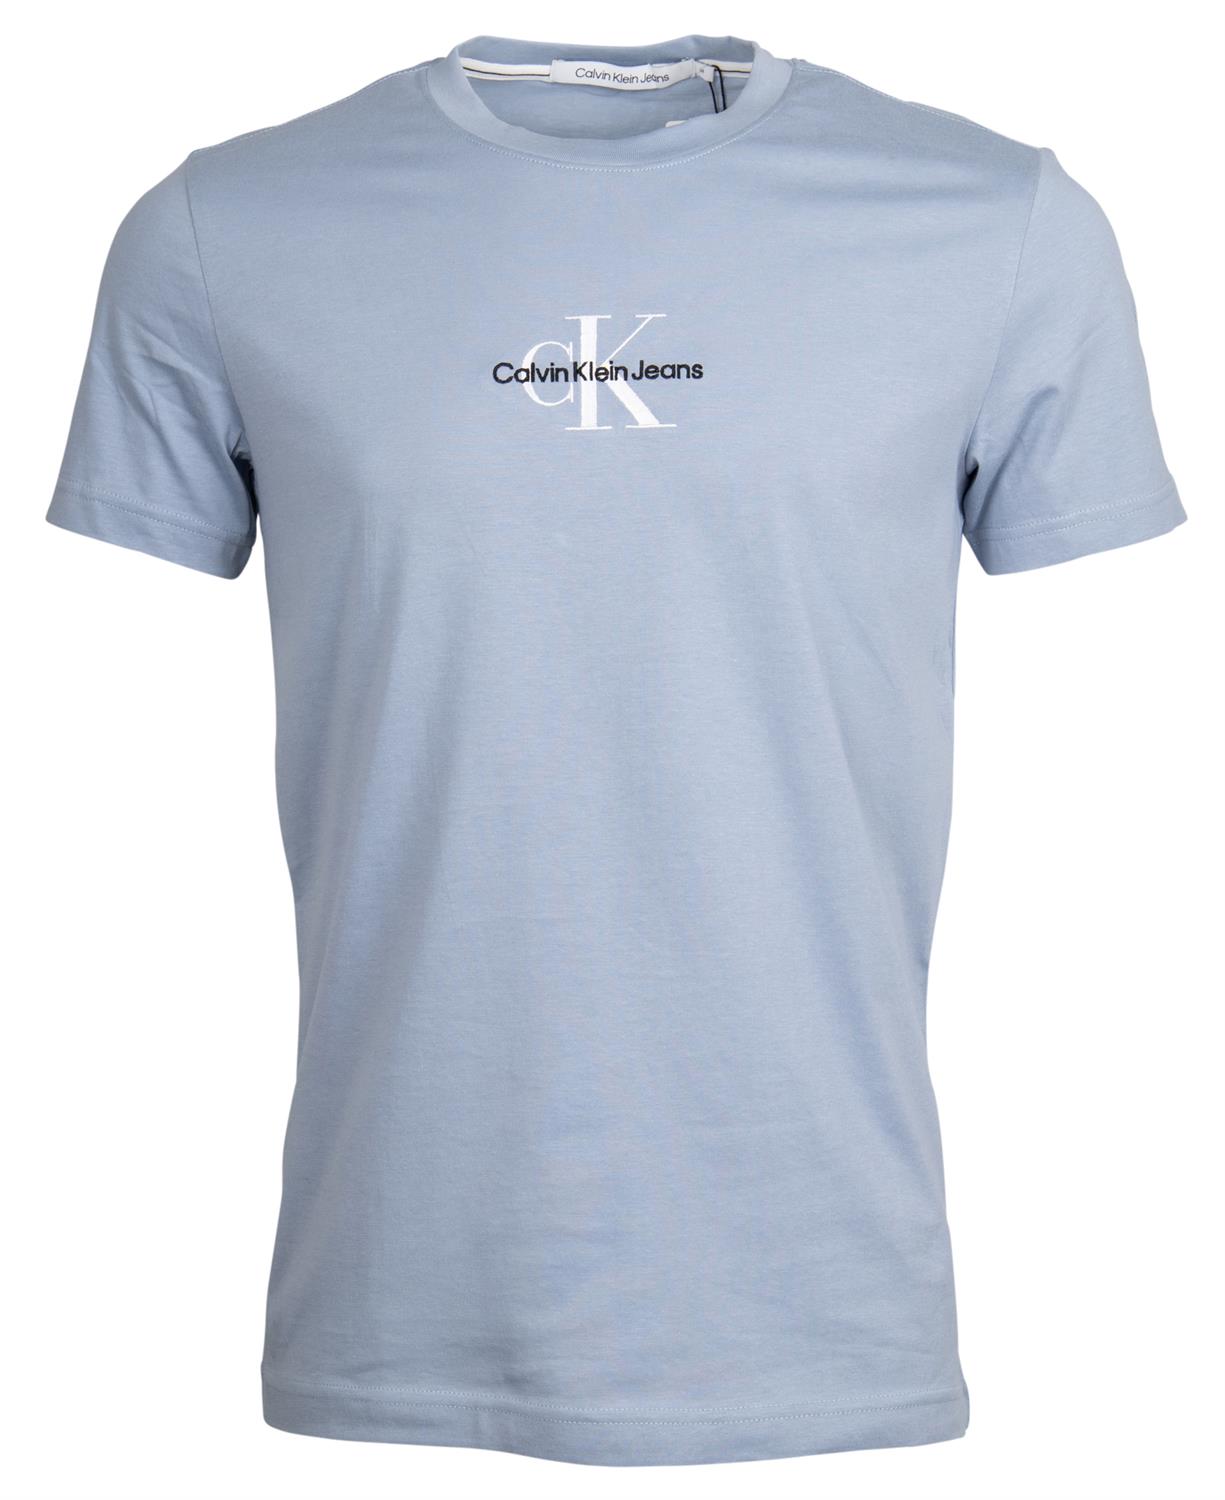 Calvin Klein Jeans Herren T-Shirt aus Baumwolle online kaufen Monogram Tee T-Shirt rot Logo - bequem bei